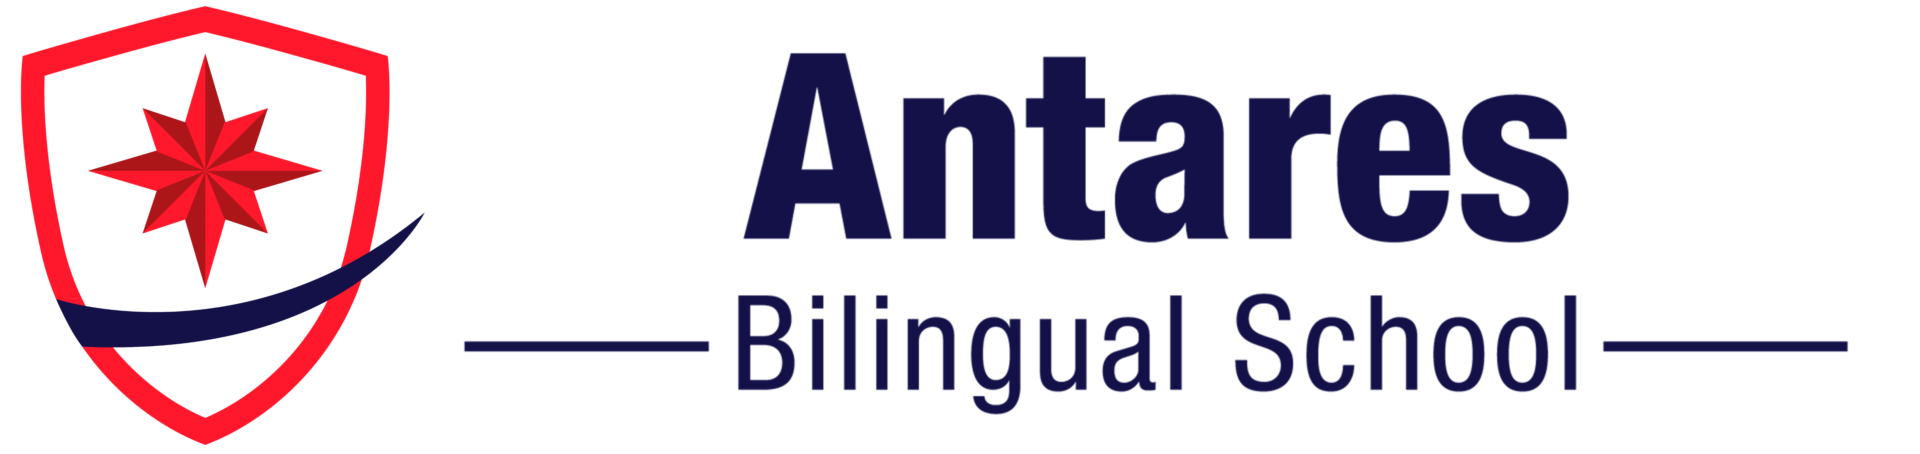 Antares bilingual school